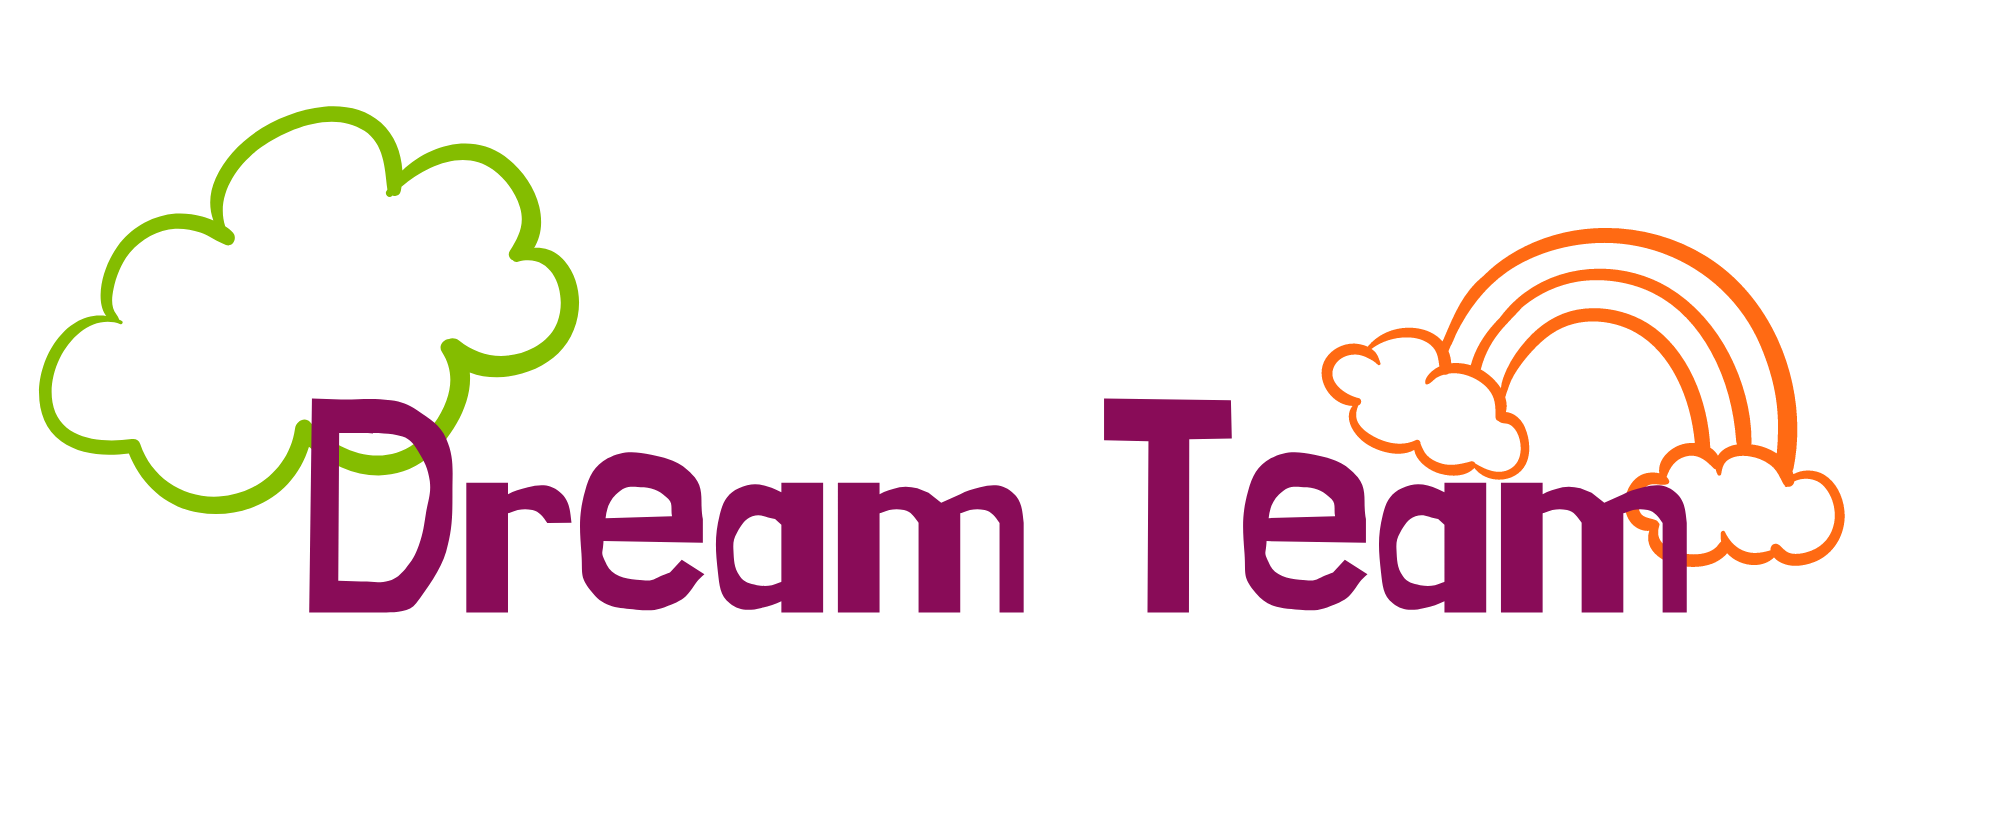 dream team logo website